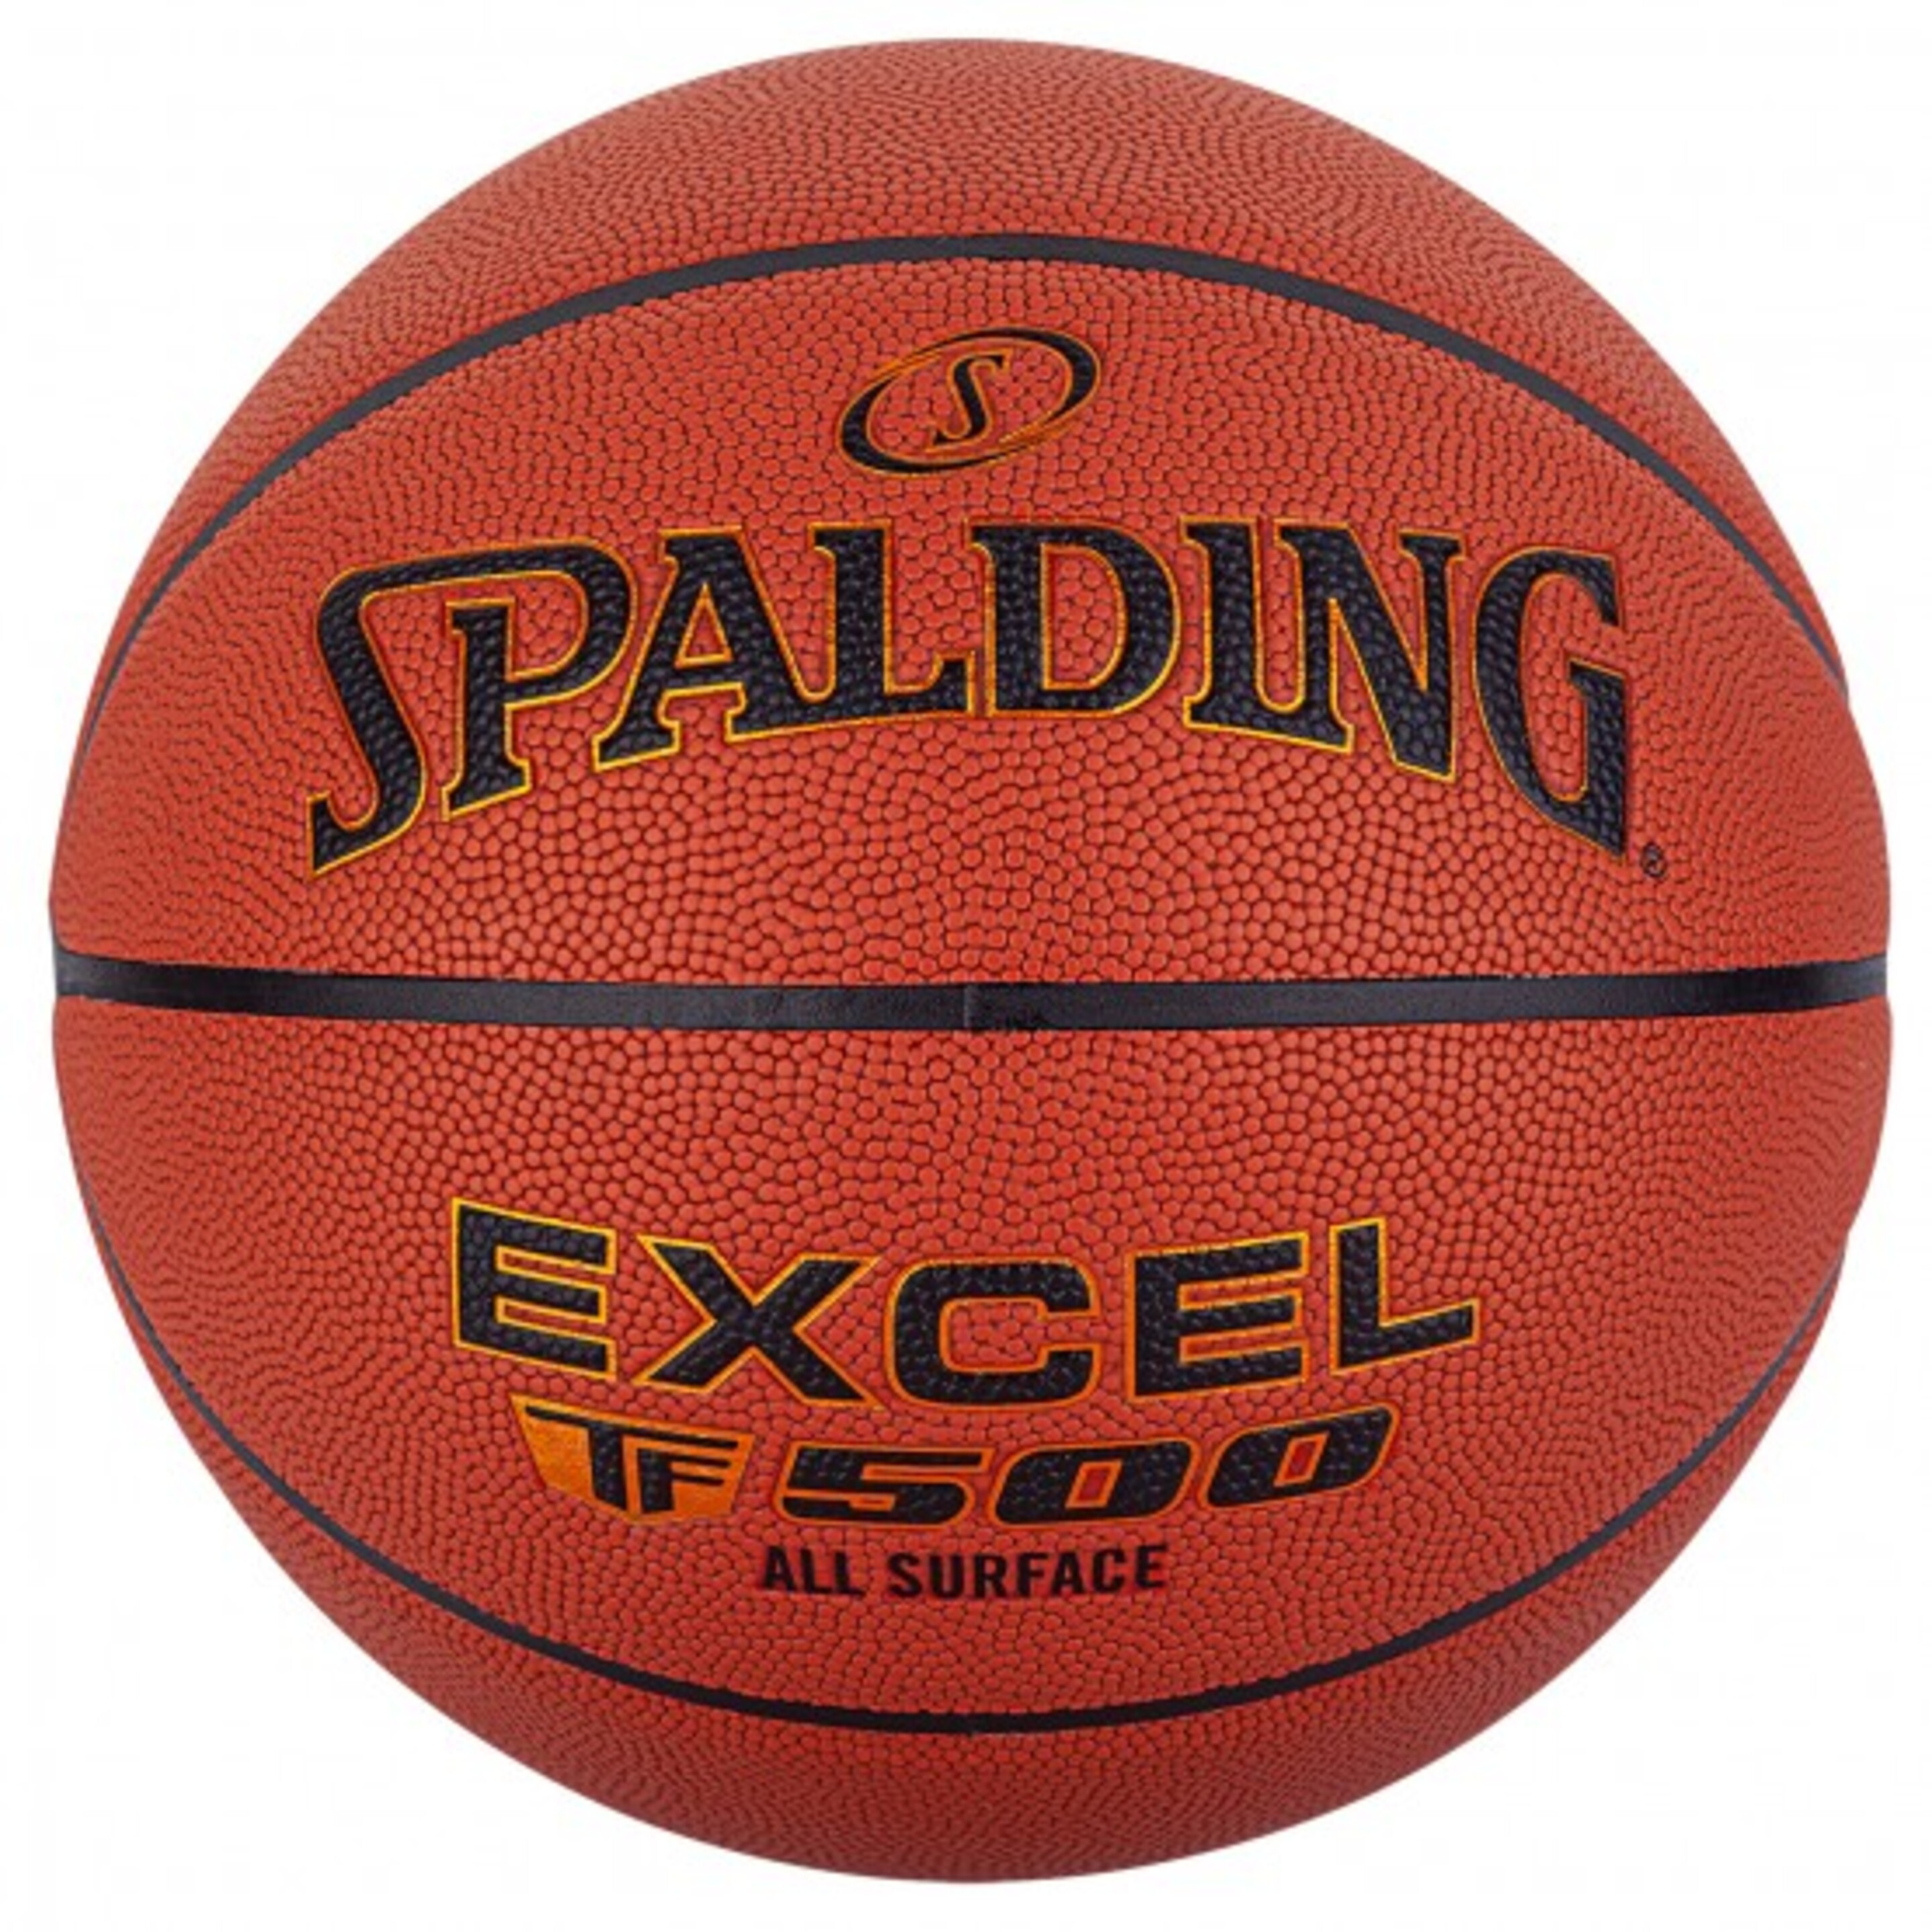 Balón De Baloncesto Spalding Excel Tf-500 Sz6. Piel